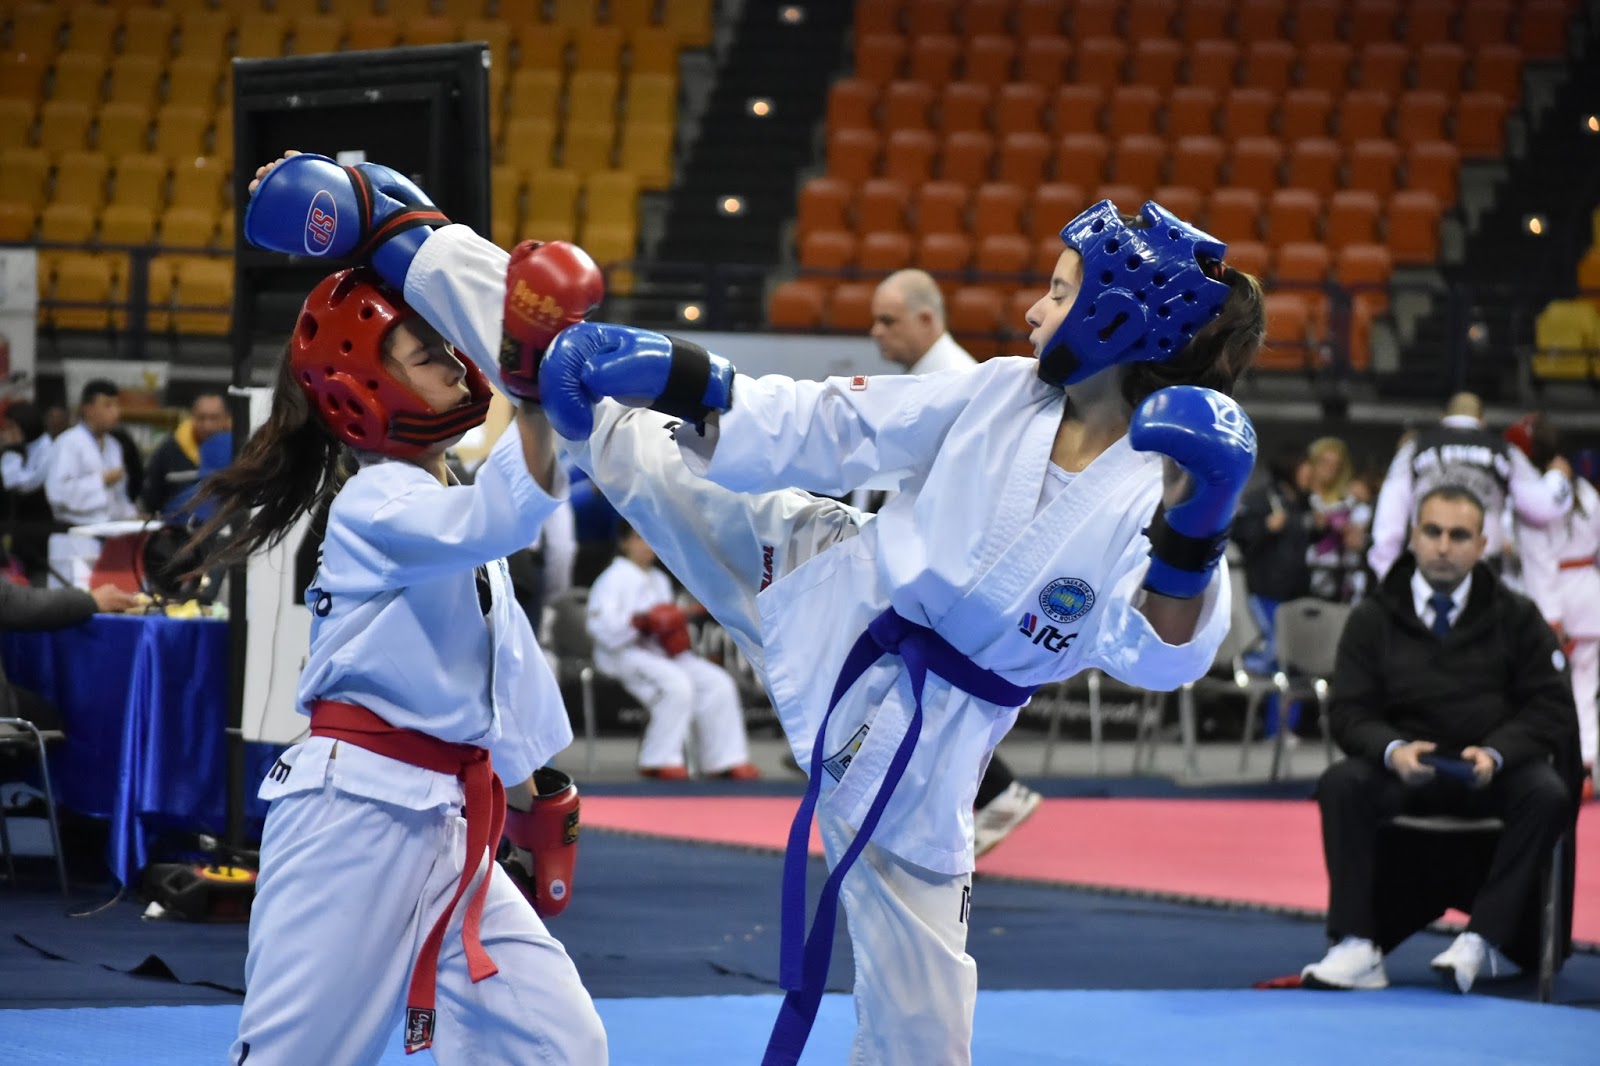 Ολοκληρώθηκε το Πανελλήνιο Π/Κ ITF | taekwondo greece group